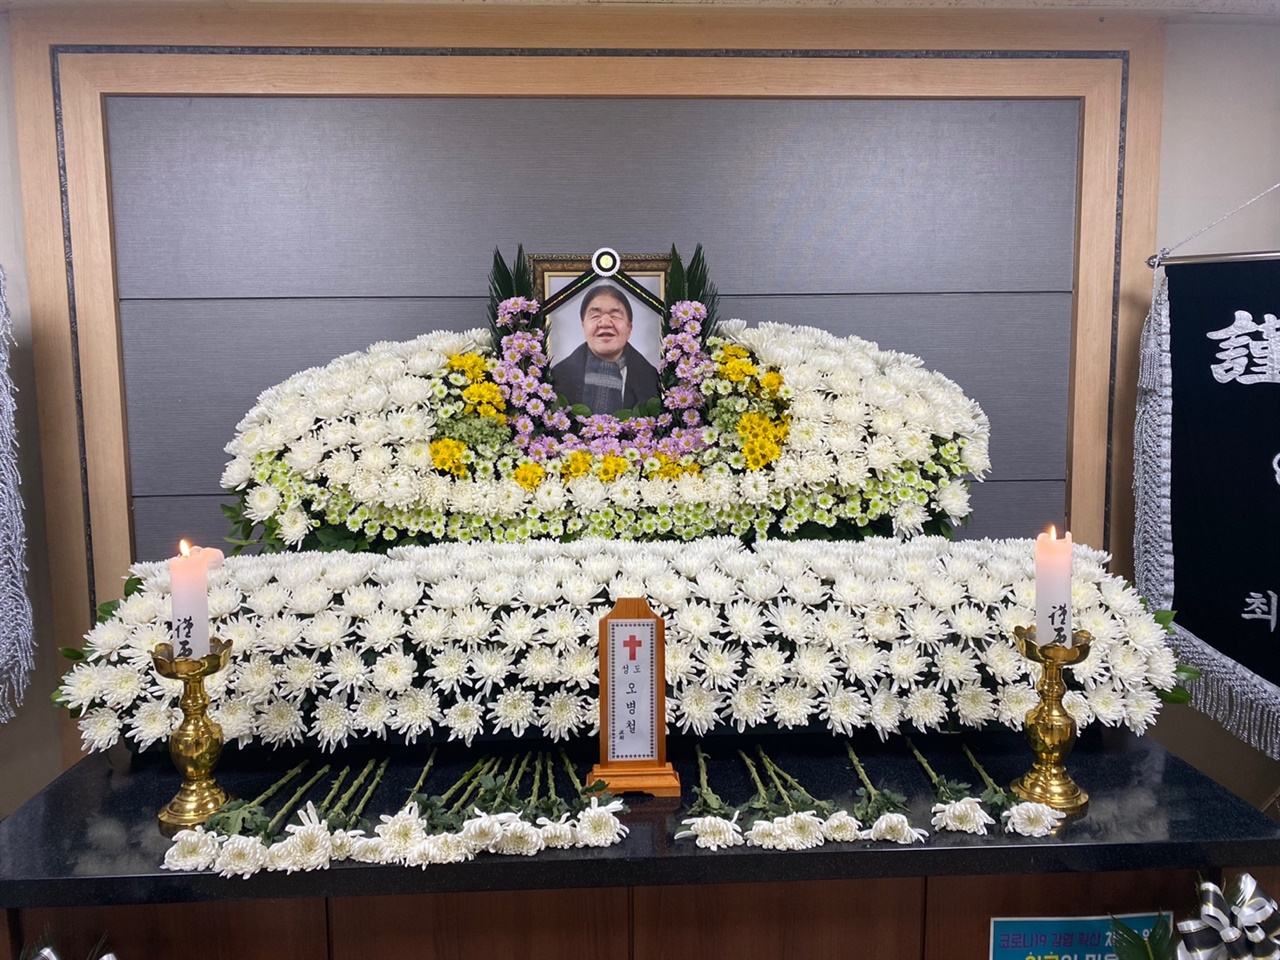 2월 24일 오병철의 장례식장, 영정사진을 보면서도 믿어지지 않았다. 